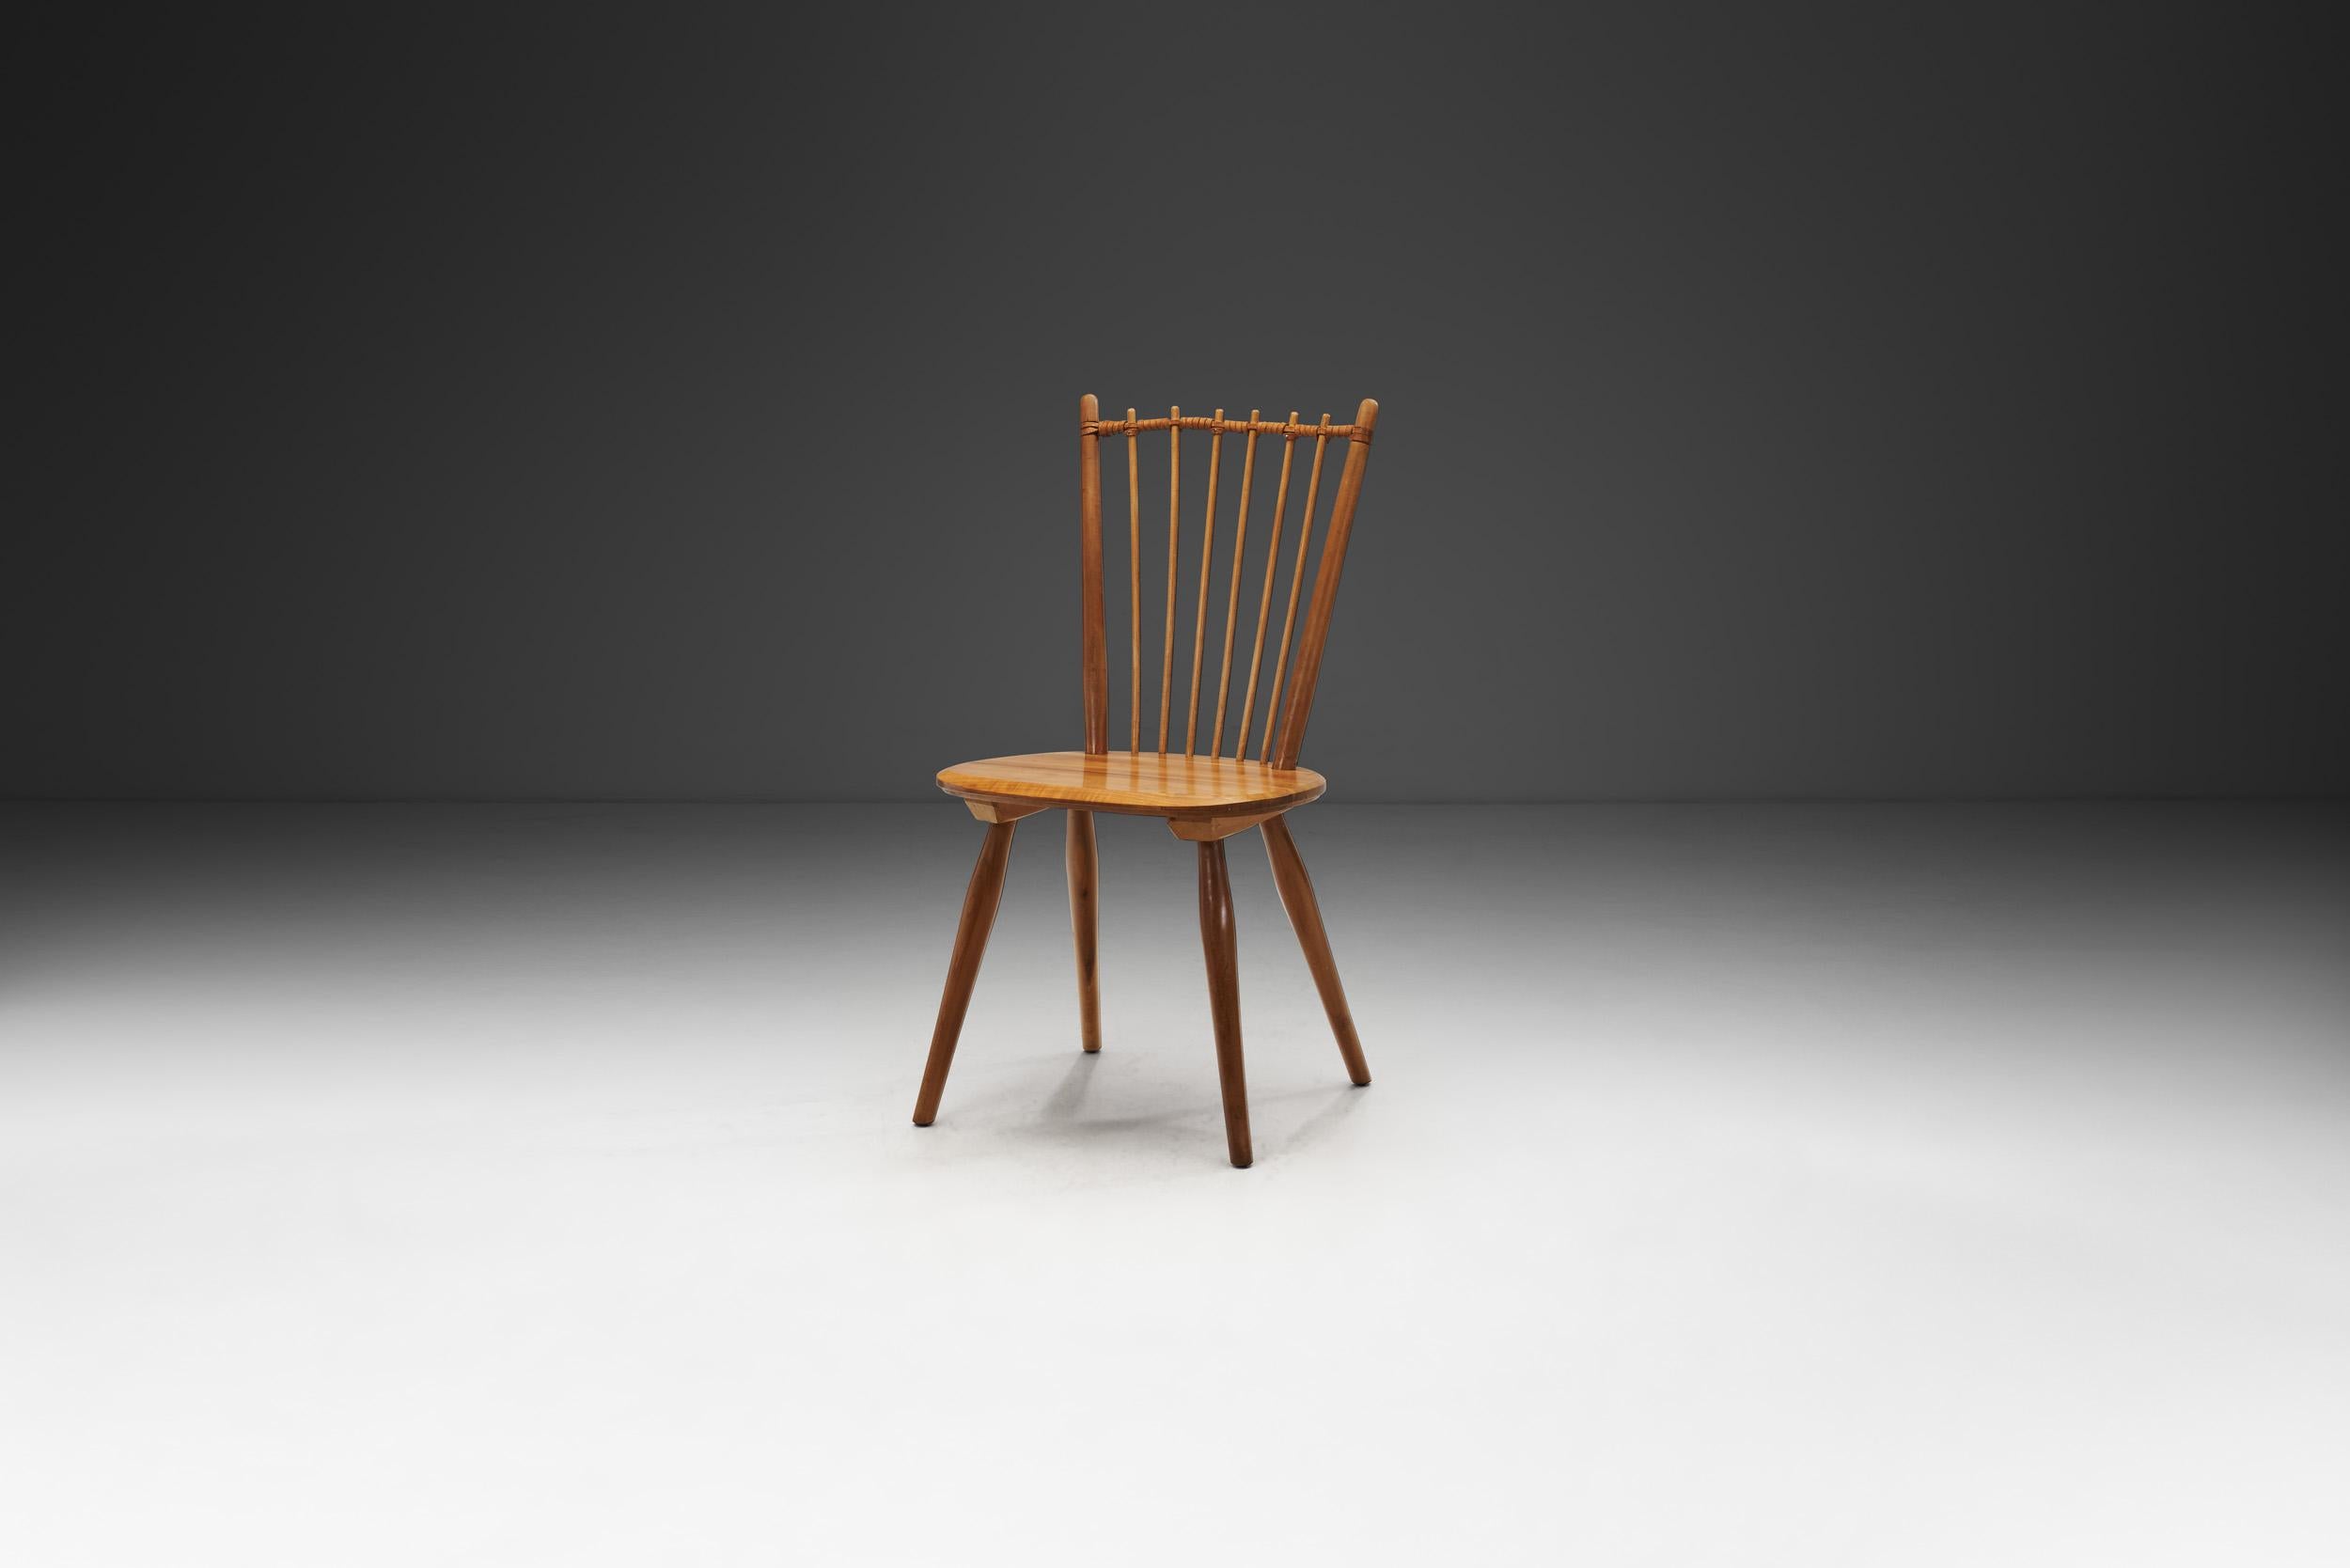 Dieser Arts and Crafts Stuhl ist vielleicht das bekannteste Modell des deutschen Designers Albert Haberer. Die flexible Rückenlehne aus dünnen Spindeln, zusammengehalten durch die geflochtene Lederverbindung, macht den Entwurf zu einem sofort